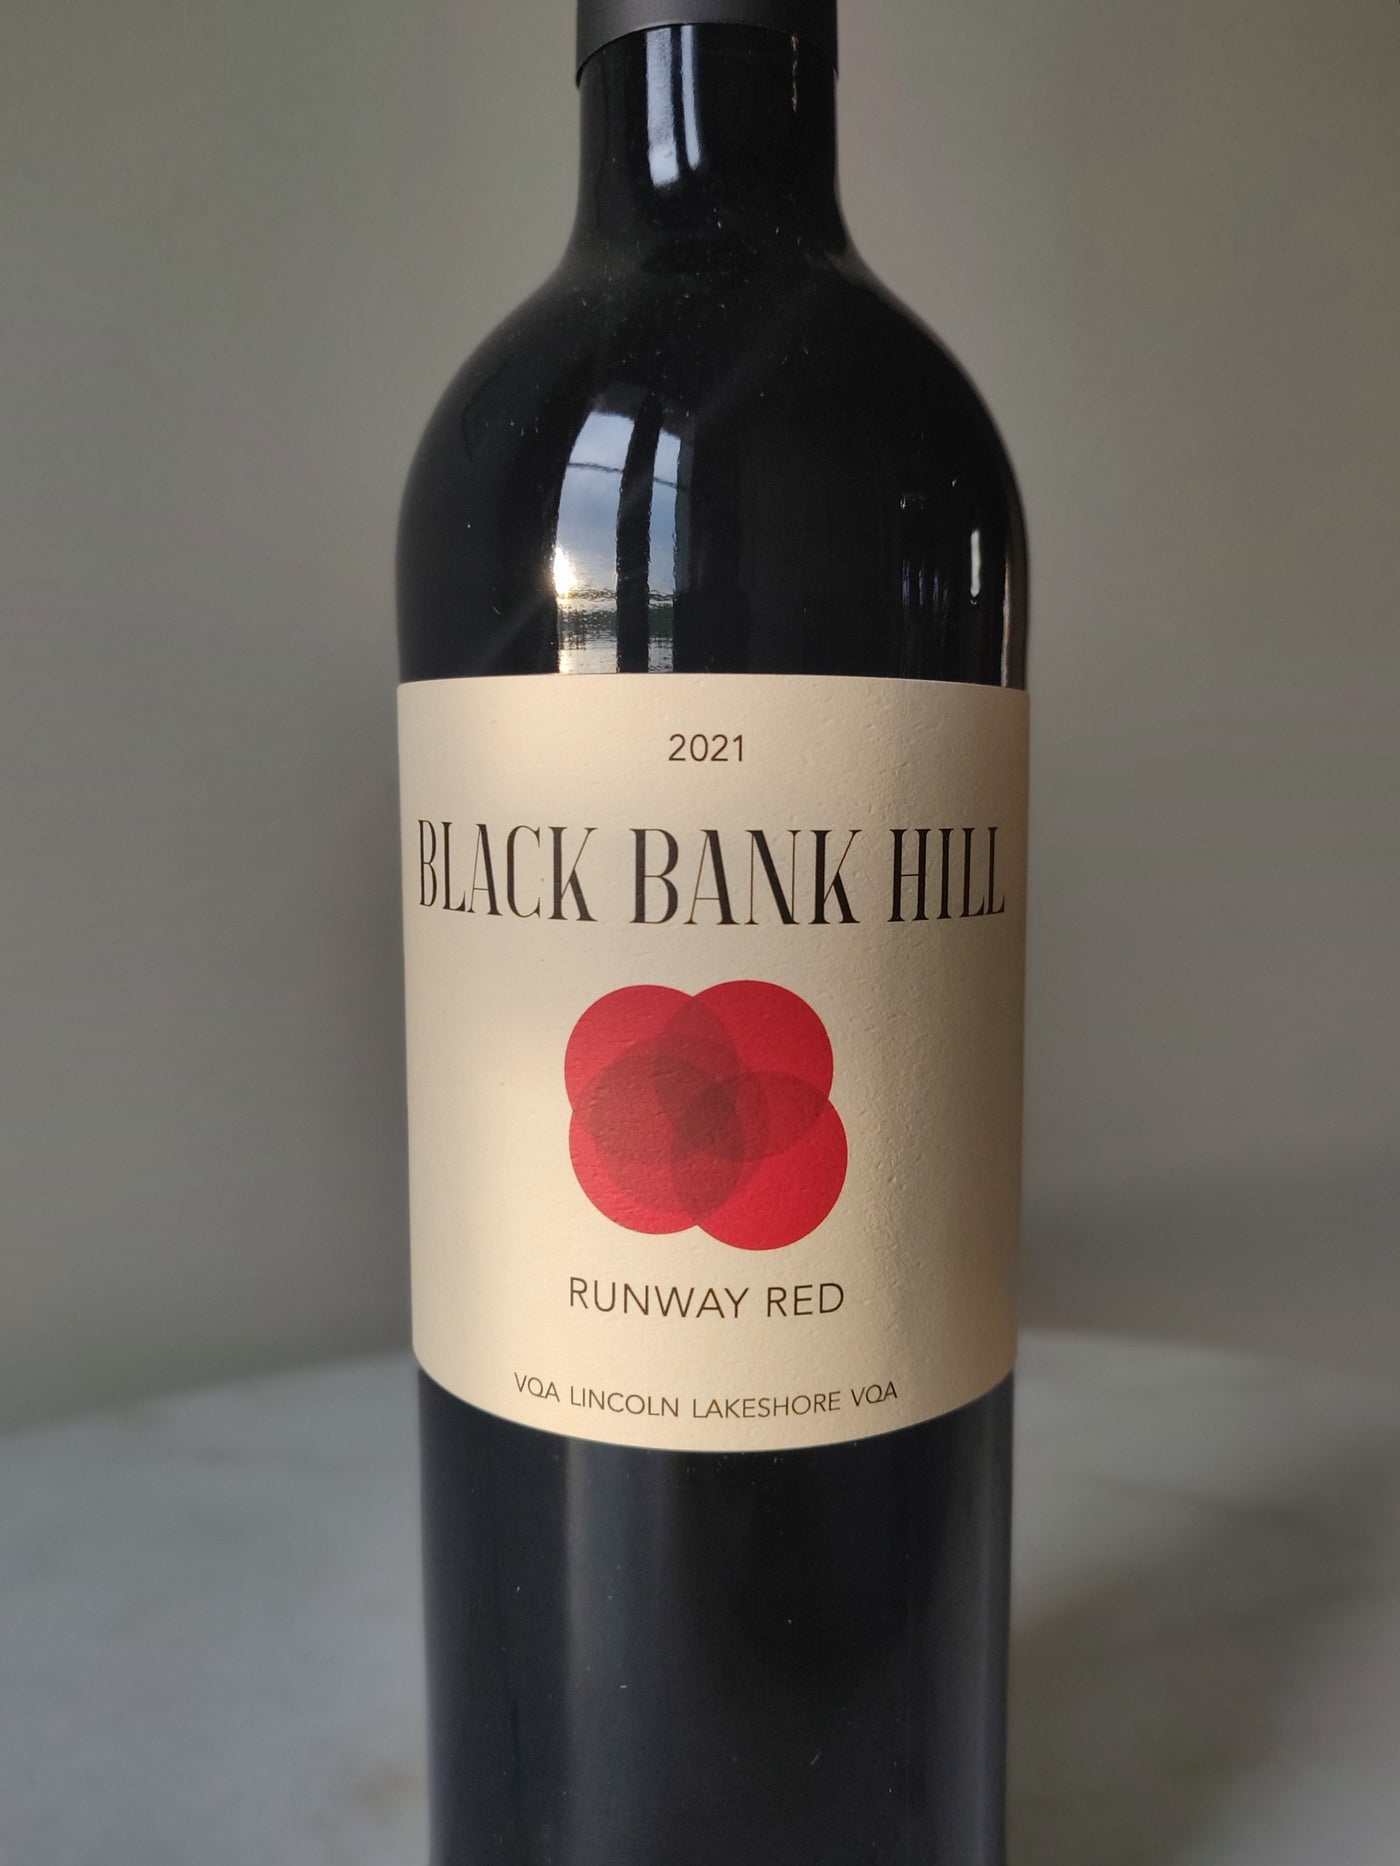 Black Bank Hill 2021 Runway Red, Lincoln Lakeshore VQA